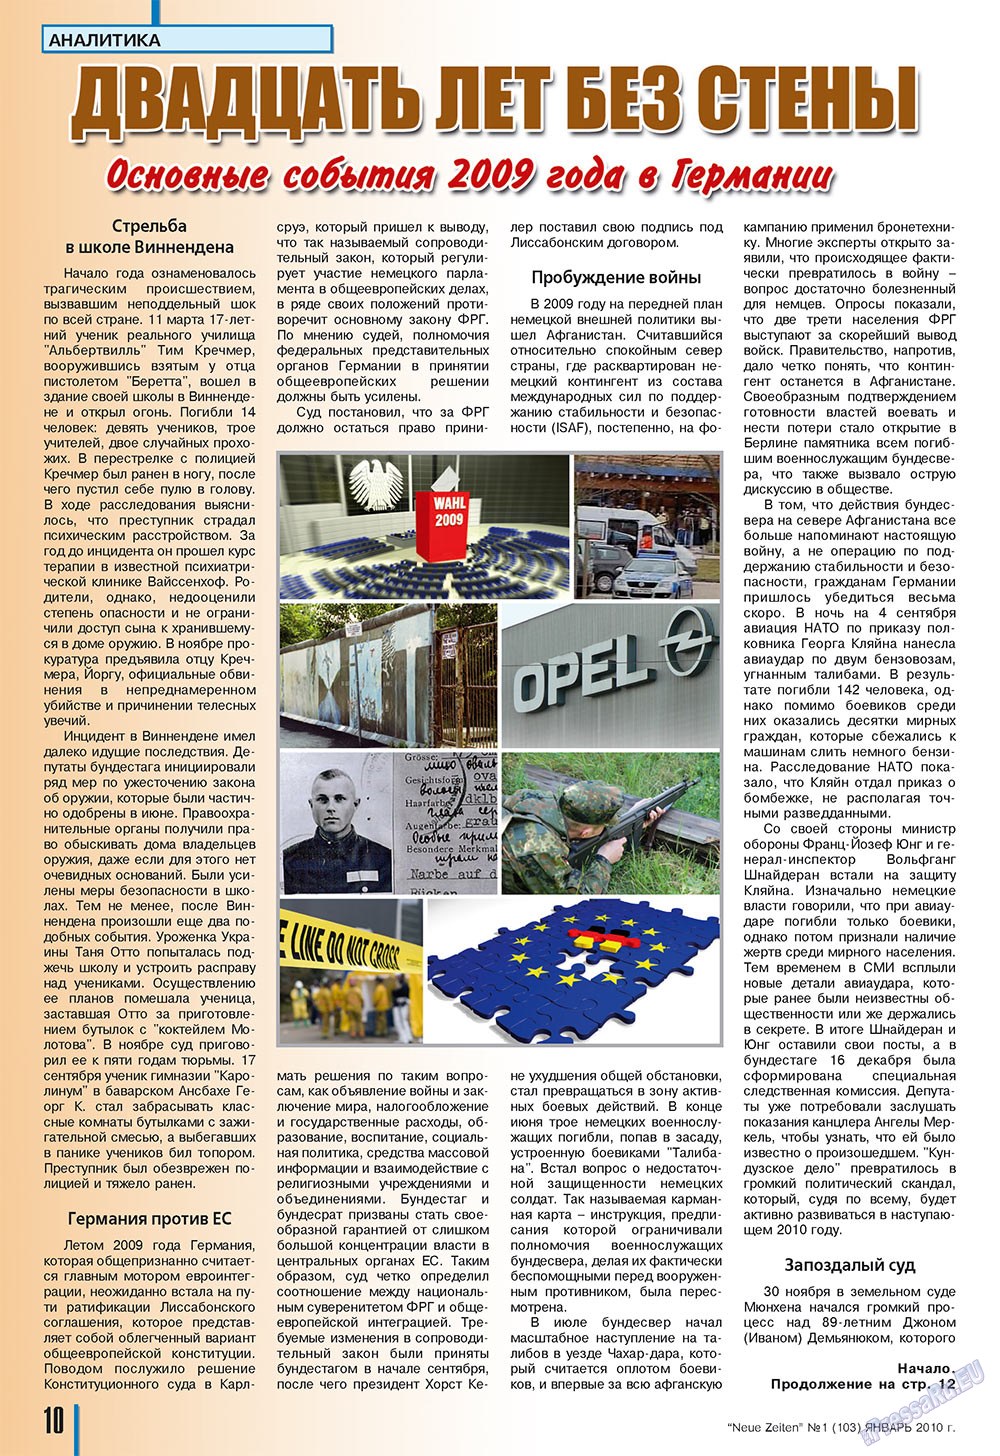 Neue Zeiten, журнал. 2010 №1 стр.10